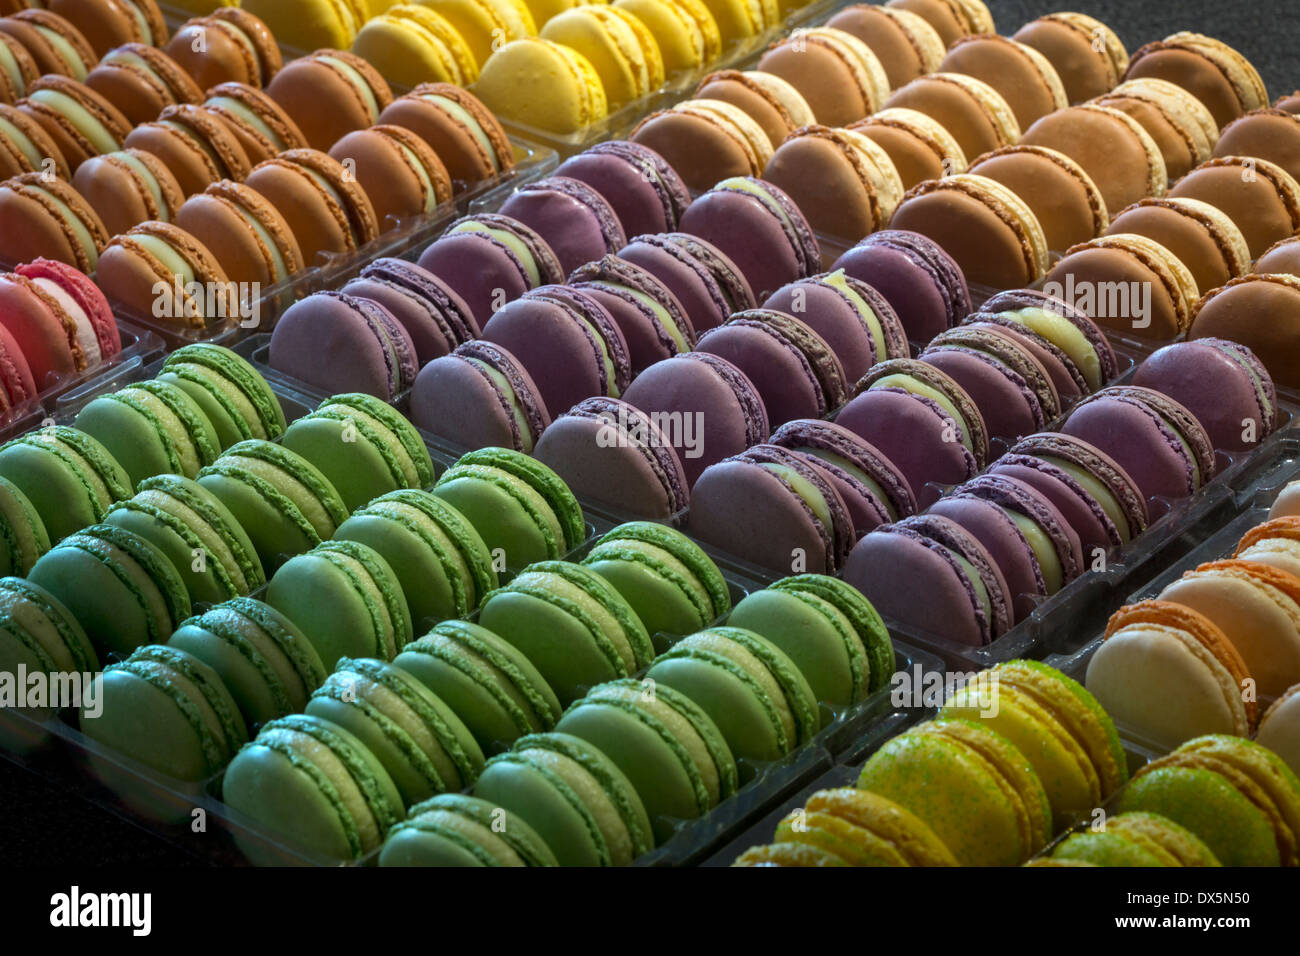 Eine Darstellung der vielfältigen Makronen (Frankreich).  Vorstellung de Macarons Variés (Frankreich). Stockfoto